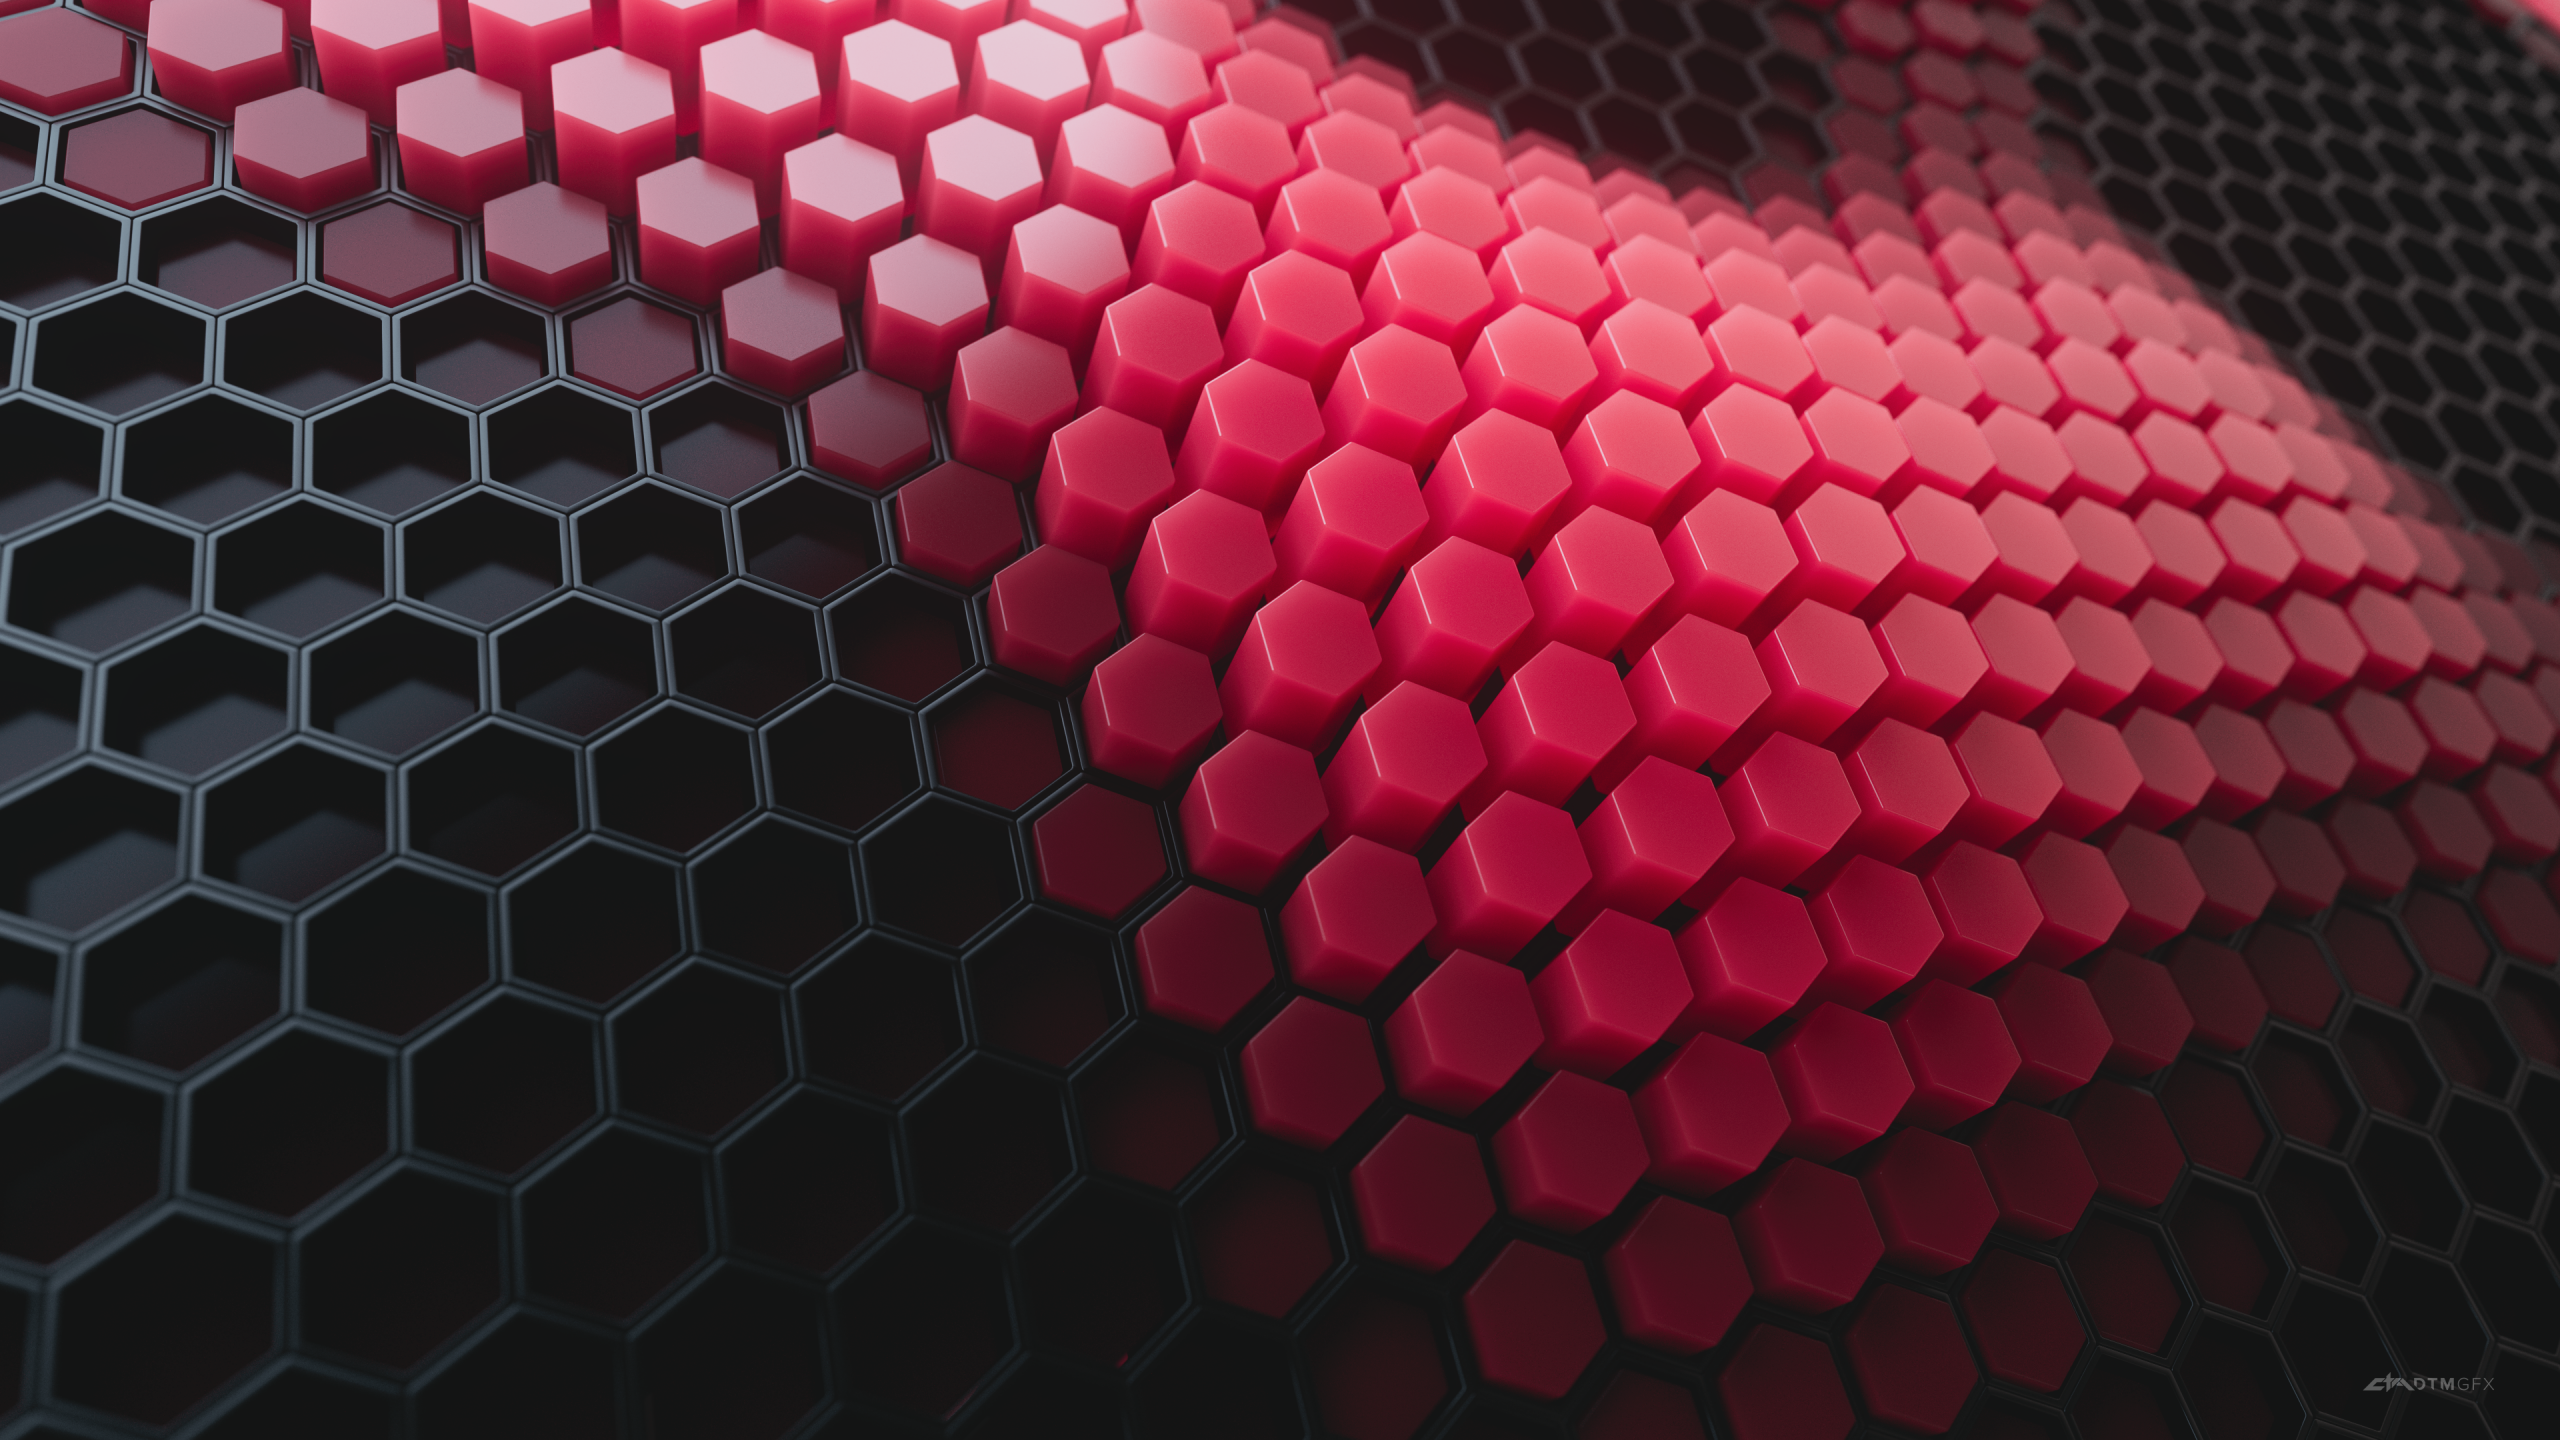 Hình nền hexagons 4K được trang trí bằng những hoa văn họa tiết tuyệt đẹp và trừu tượng sẽ cho bạn trải nghiệm một cảm giác đầy ấn tượng. Sự kết hợp hài hòa giữa hình khối và màu sắc tạo nên một tác phẩm nghệ thuật ấn tượng và đầy cảm hứng. Nếu bạn yêu thích sự cân bằng và tối giản, thì đây chính là tác phẩm dành cho bạn.